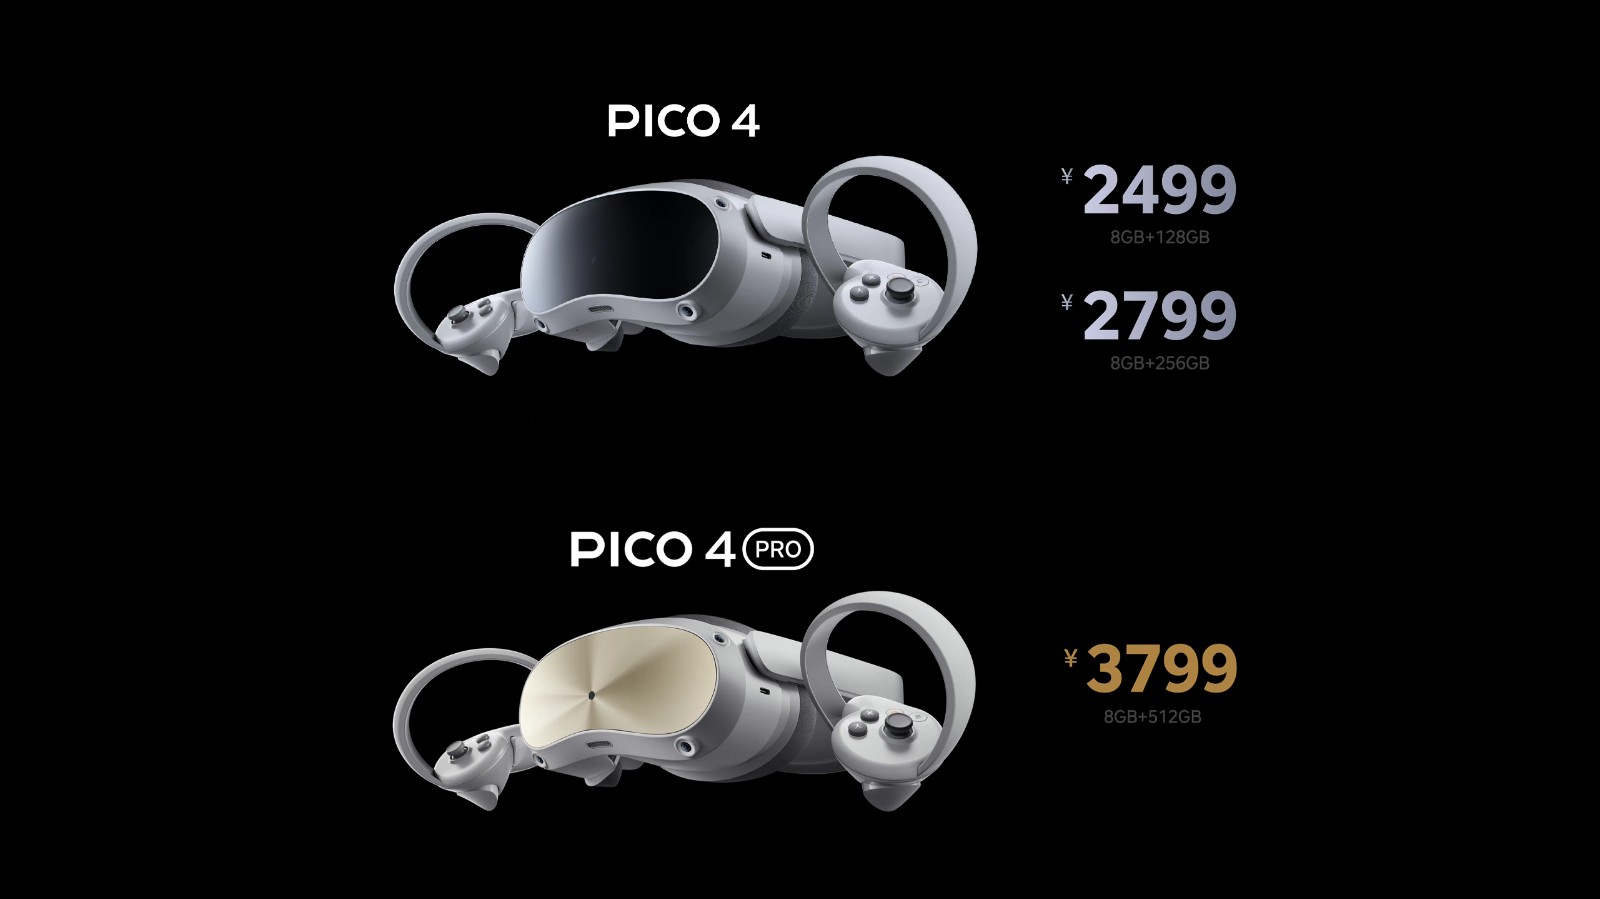 字节跳动VR一体机Pico 4国行发布 2499元起